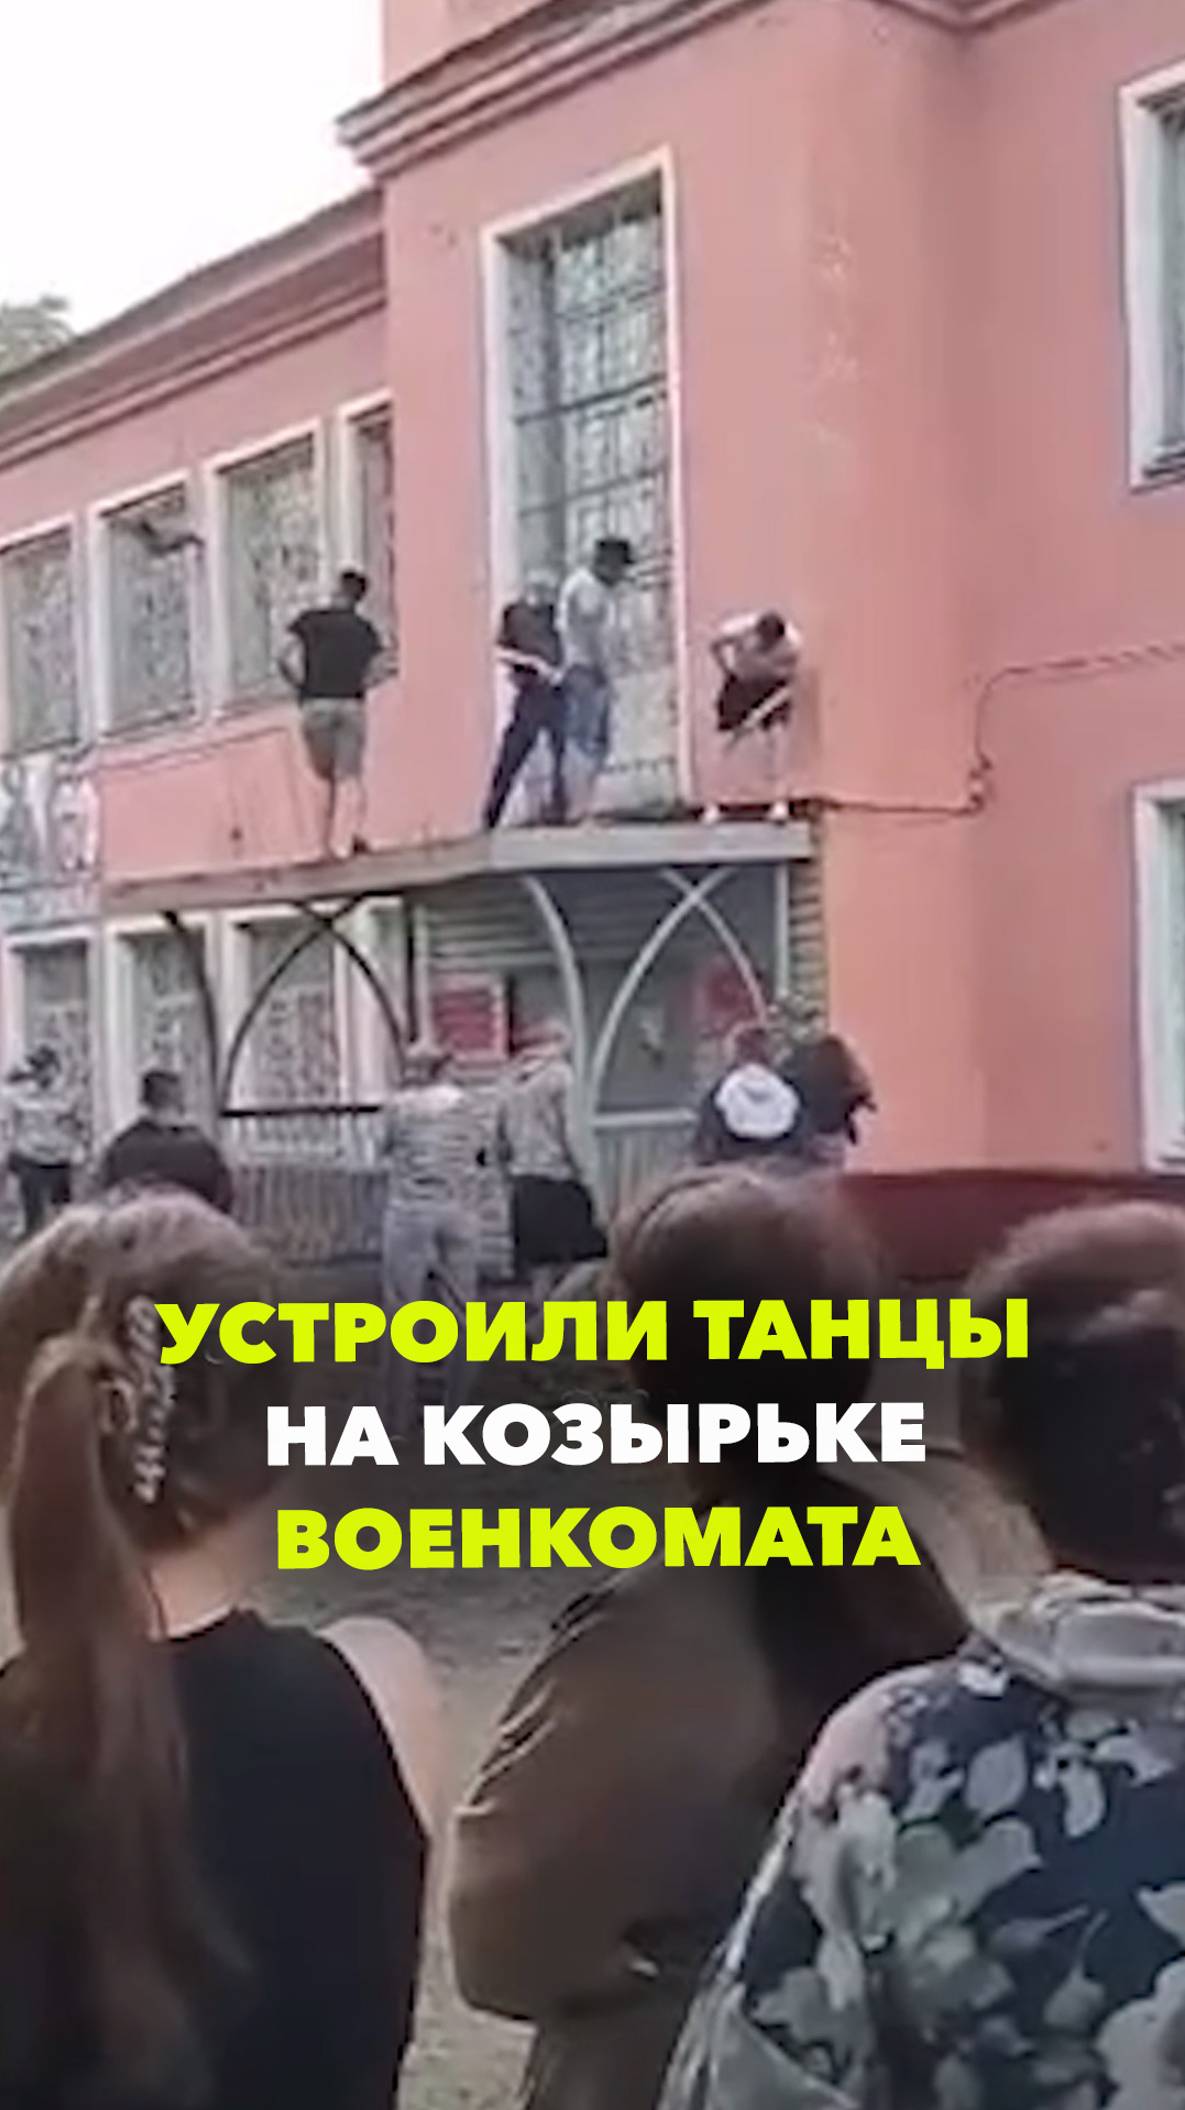 Танцы и стрельба в воздух: полиция арестовала буянившую на козырьке военкомата компанию